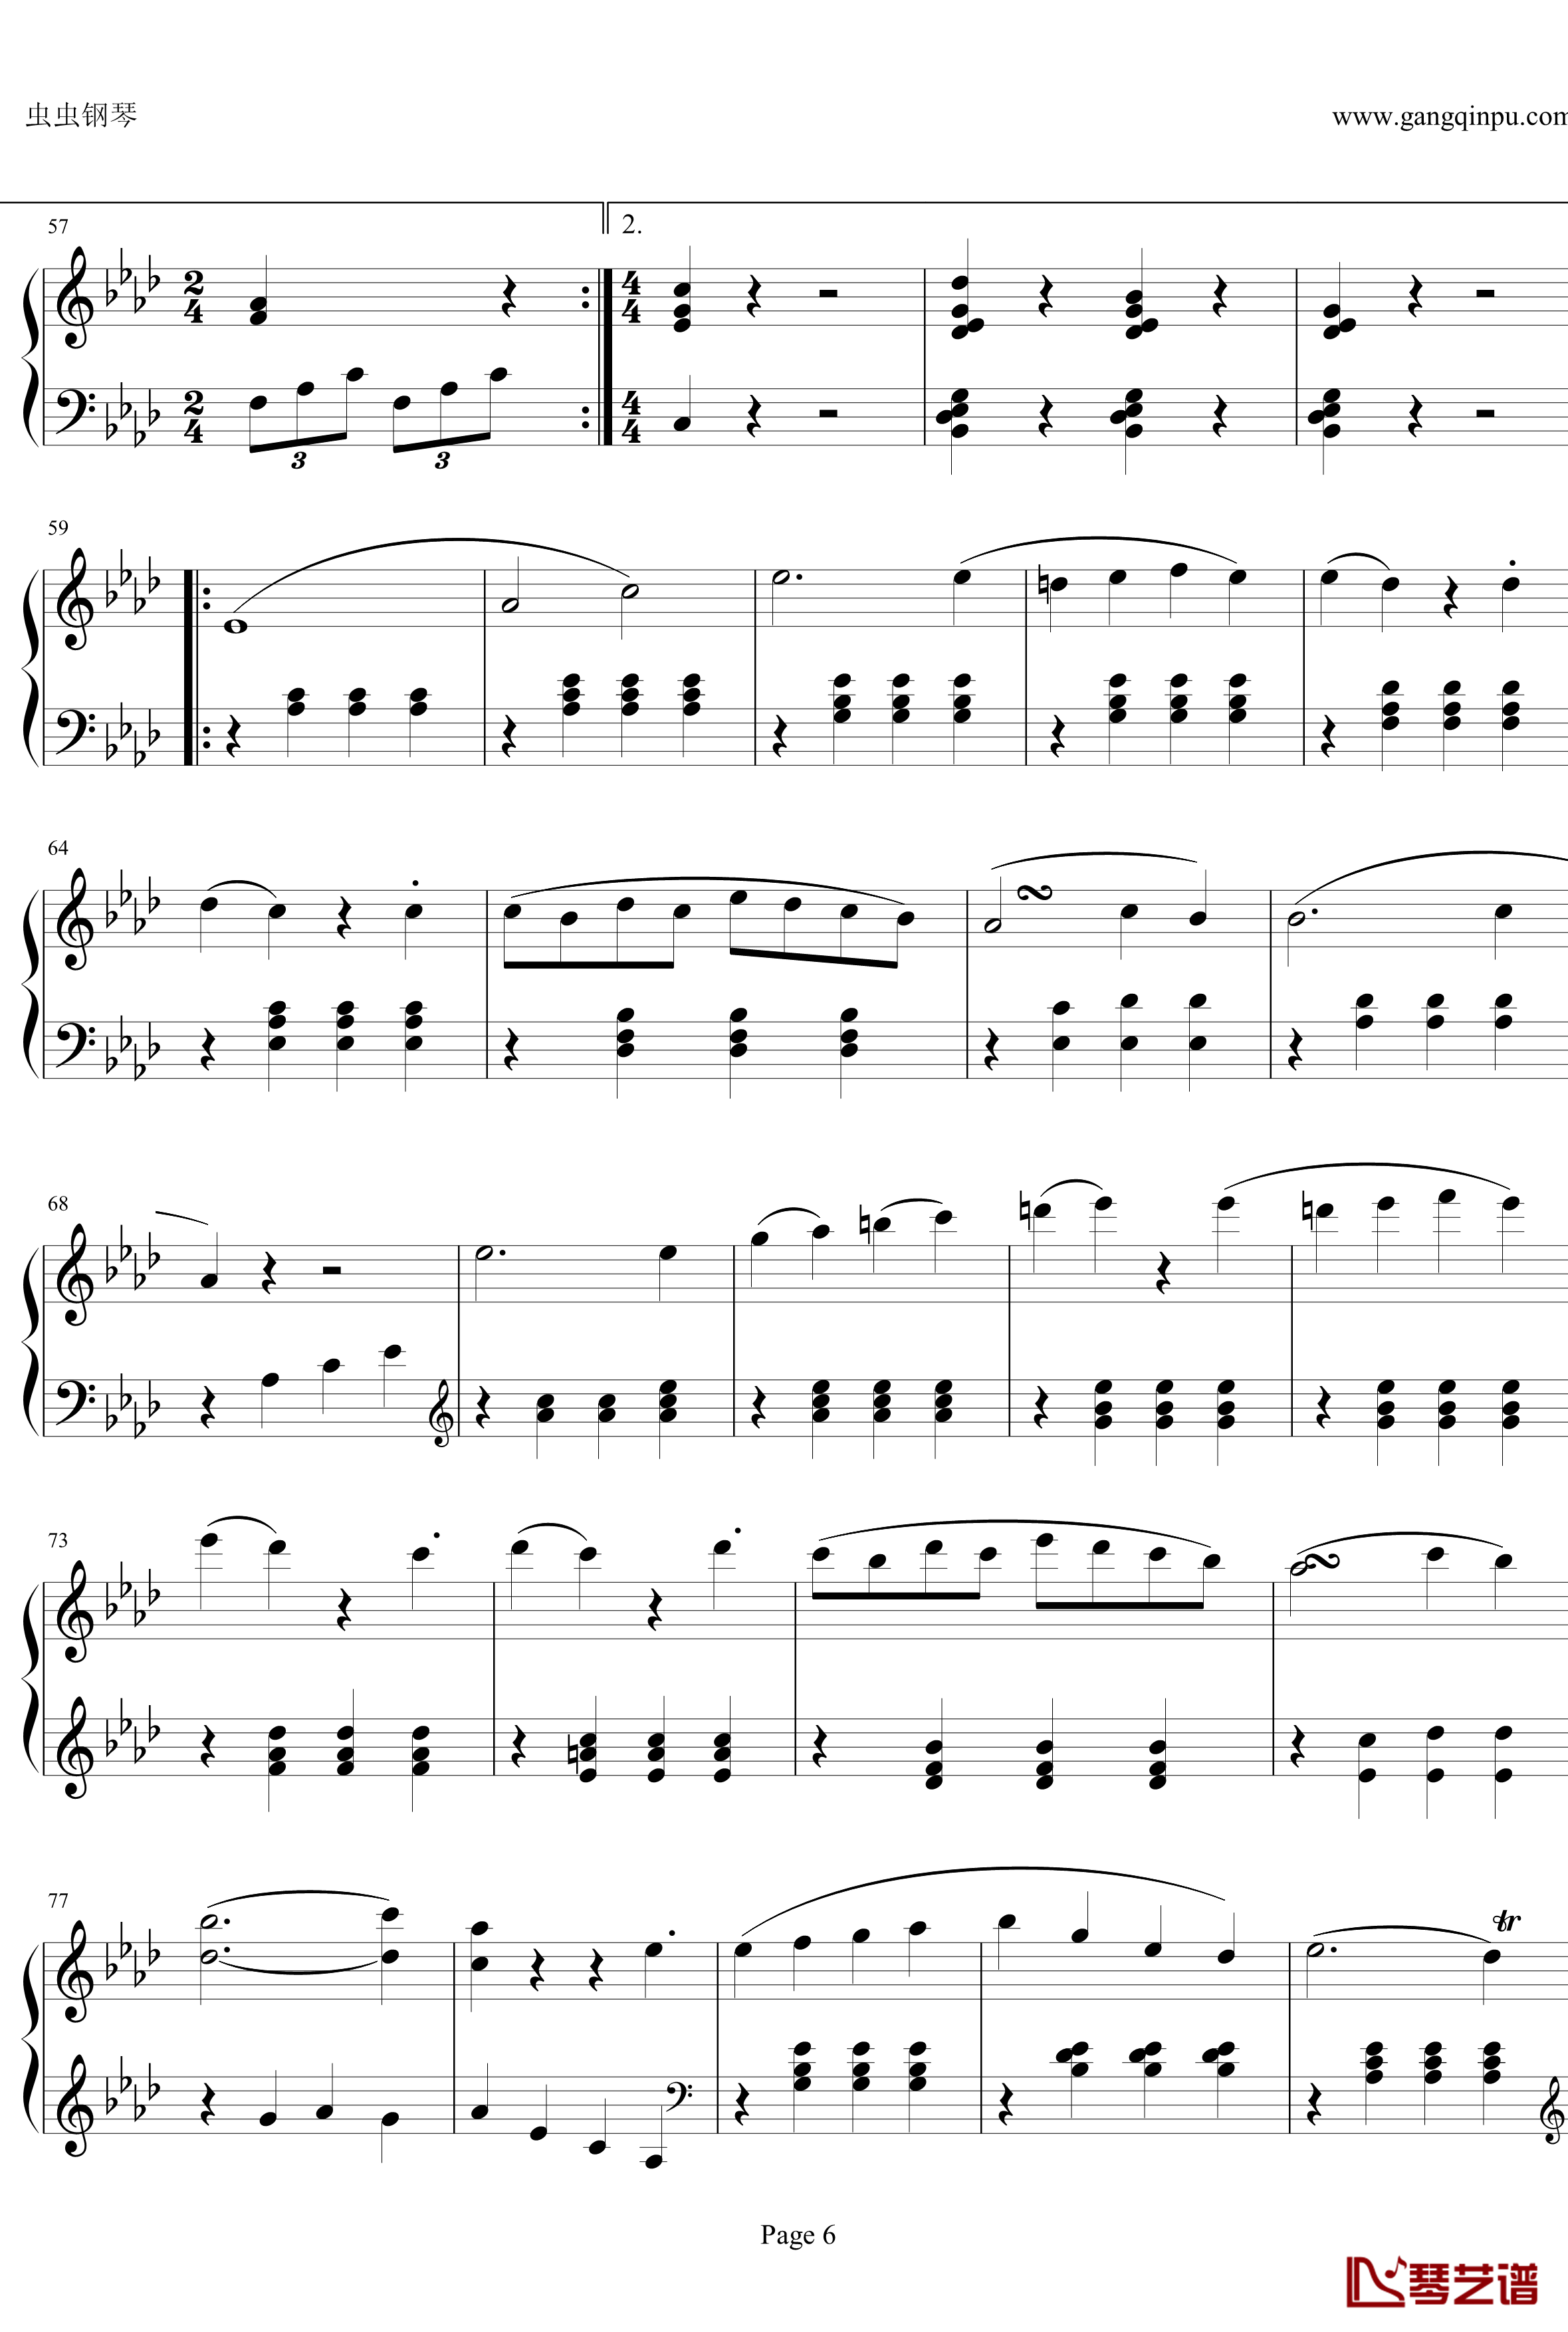 贝多芬第一钢琴奏鸣曲钢琴谱-作品2，第一号-贝多芬-beethoven6